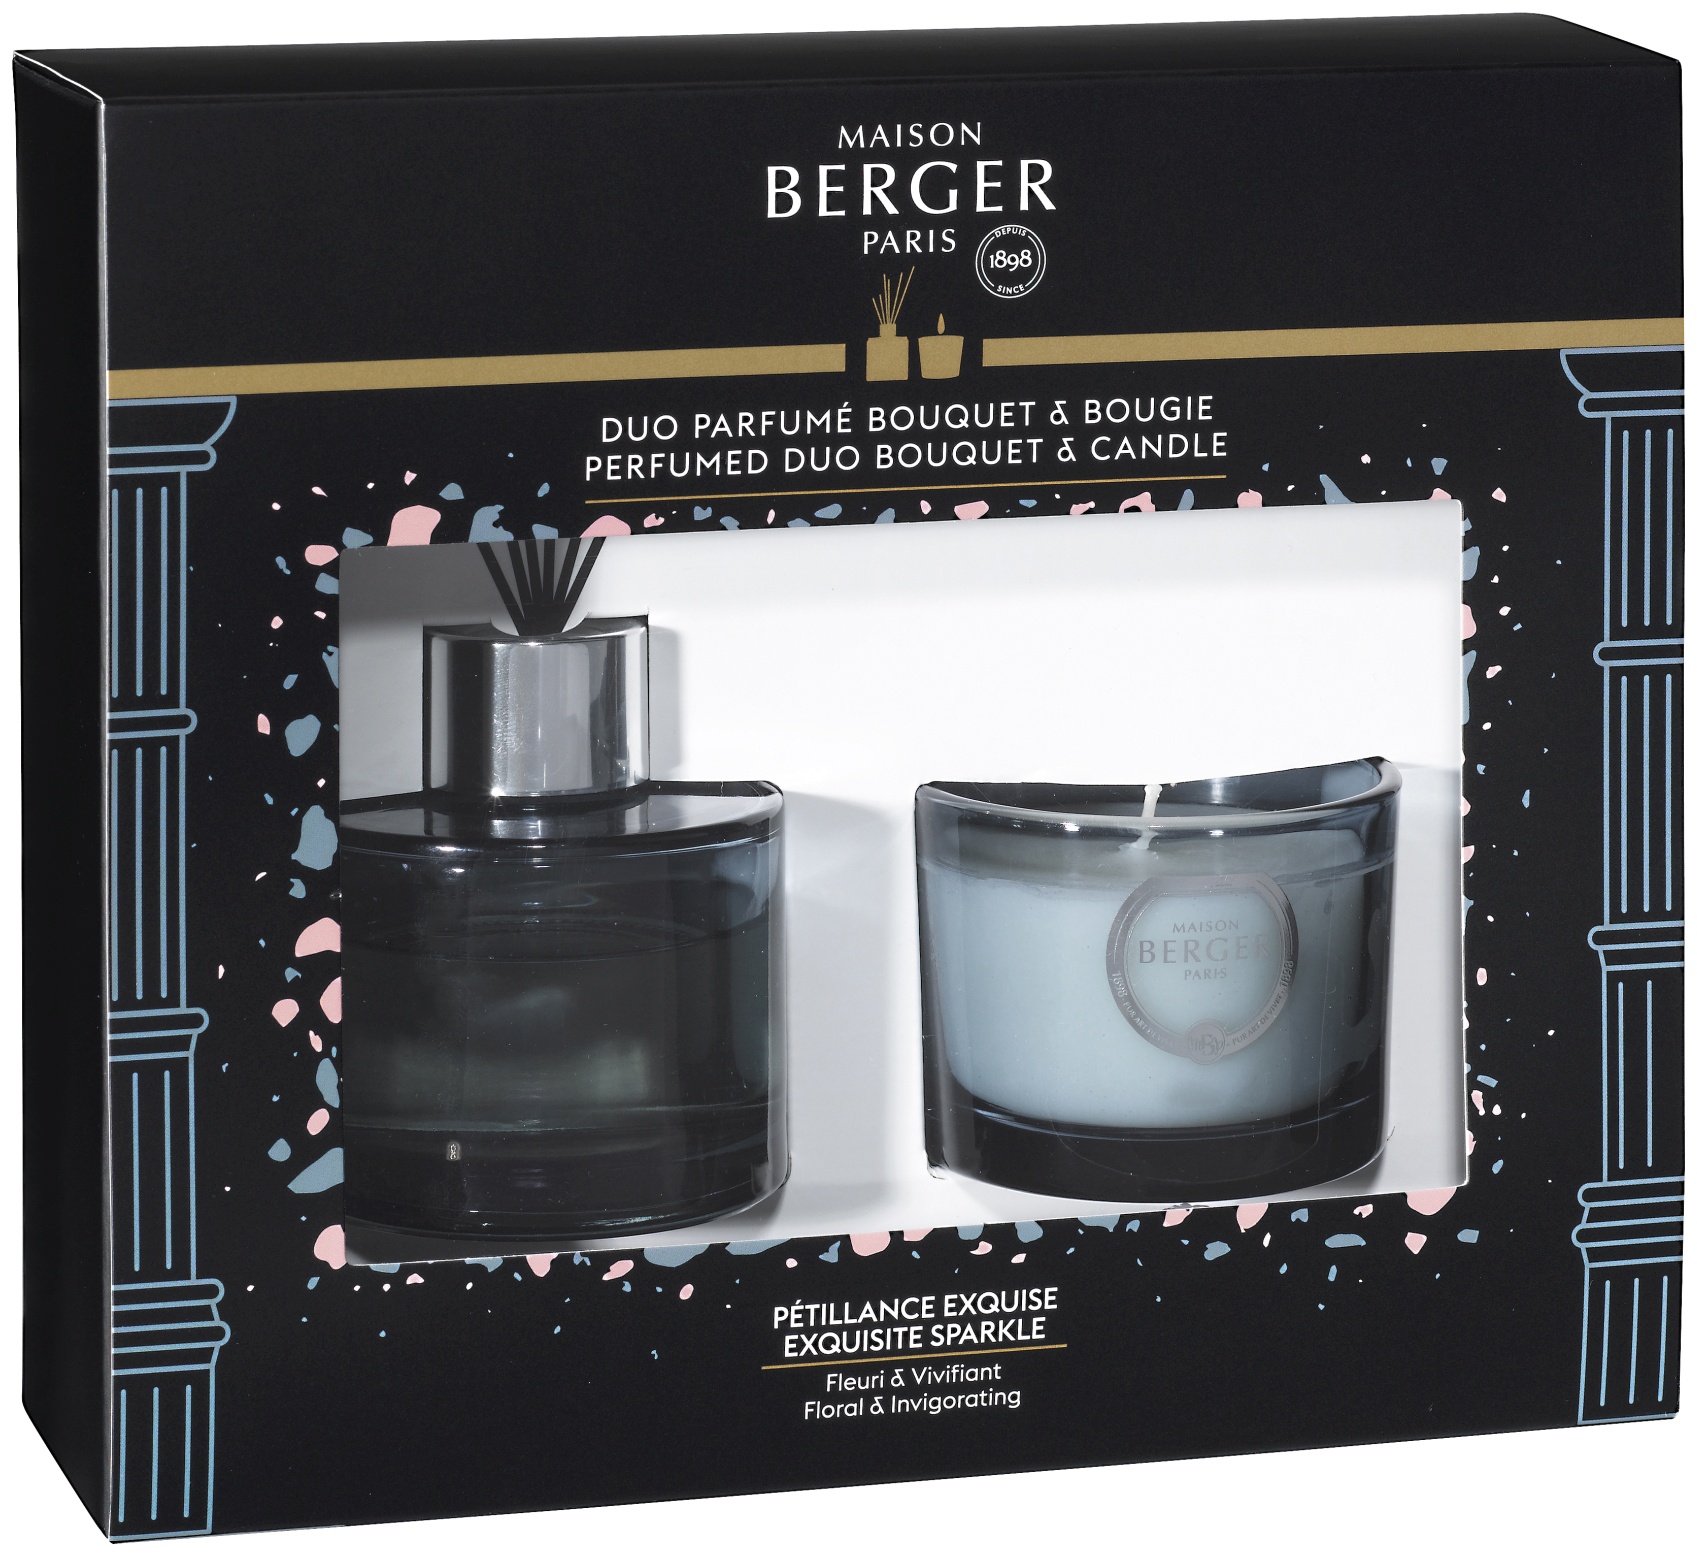 Set Berger mini Duo Olympe cu difuzor parfum 80ml + lumanare parfumata 80g Exquisite Sparkle 80g pret redus